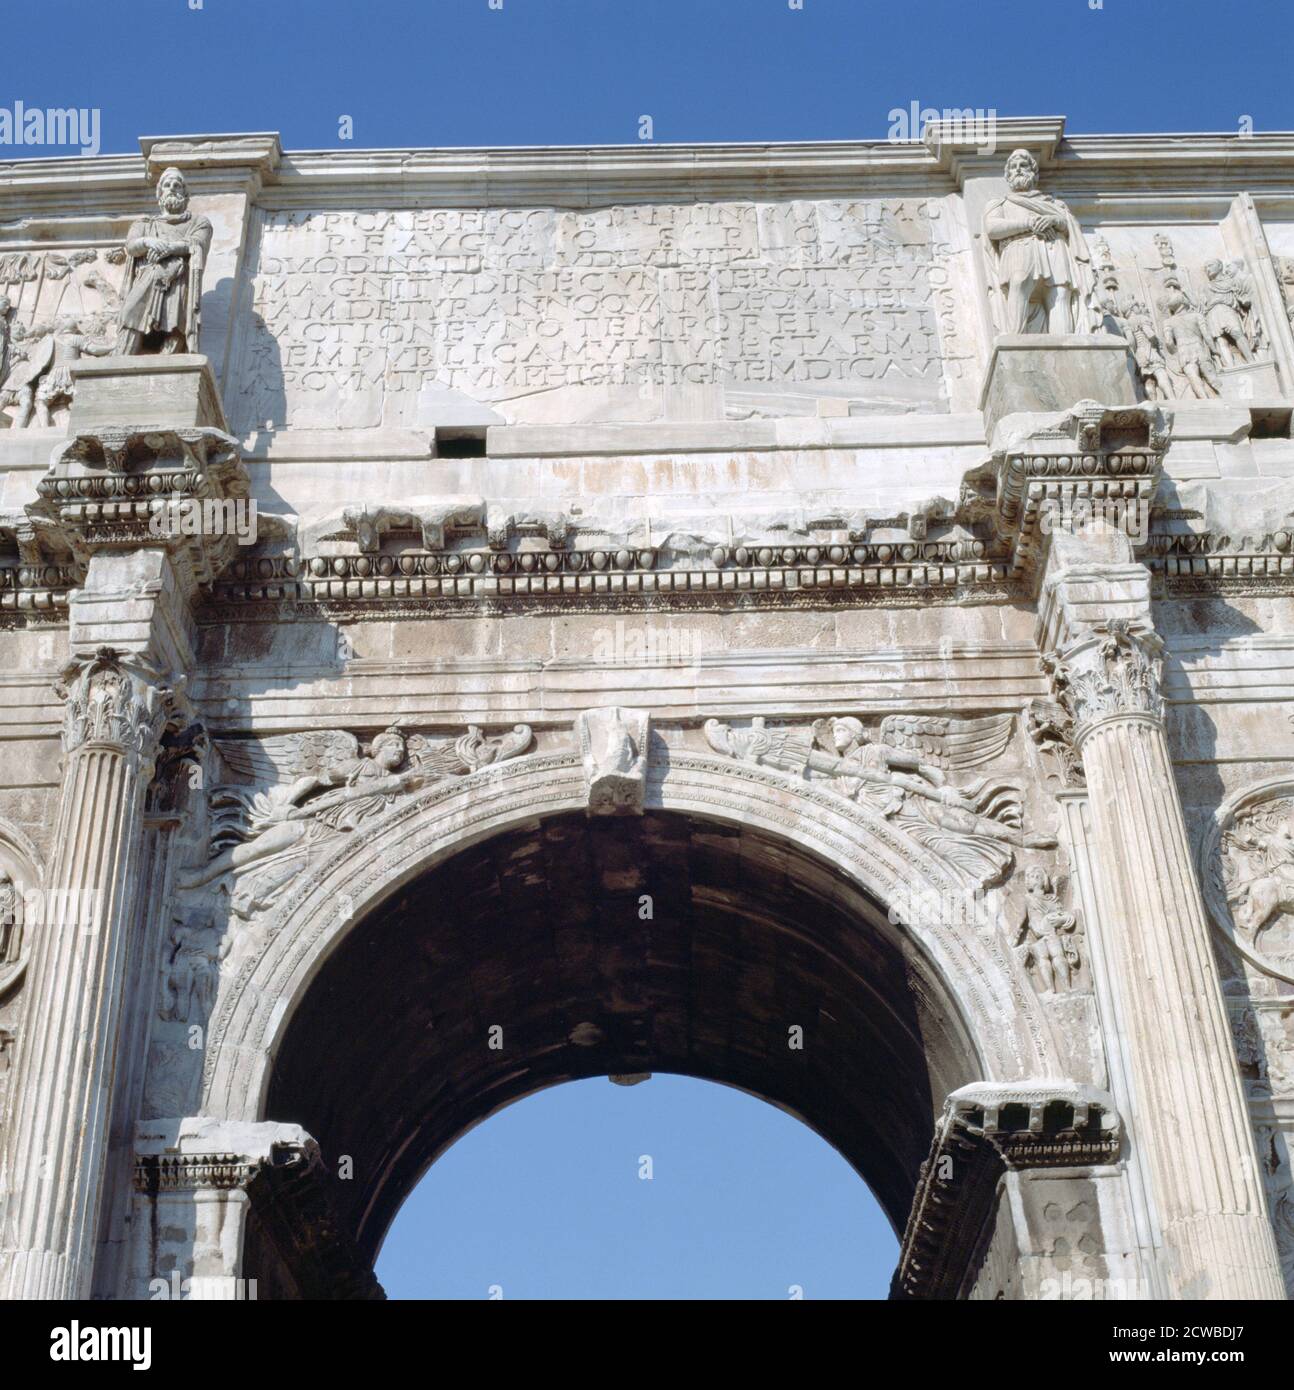 Arco de Constantino, Roma, siglo IV. El Arco de Constantino es un arco triunfal en Roma, situado entre el Coliseo y la Colina Palatina. Fue erigido para conmemorar la victoria de Constantino I sobre Maxentus en la Batalla del Puente de Milvian el 28 de octubre de 312. El artista es desconocido. Foto de stock